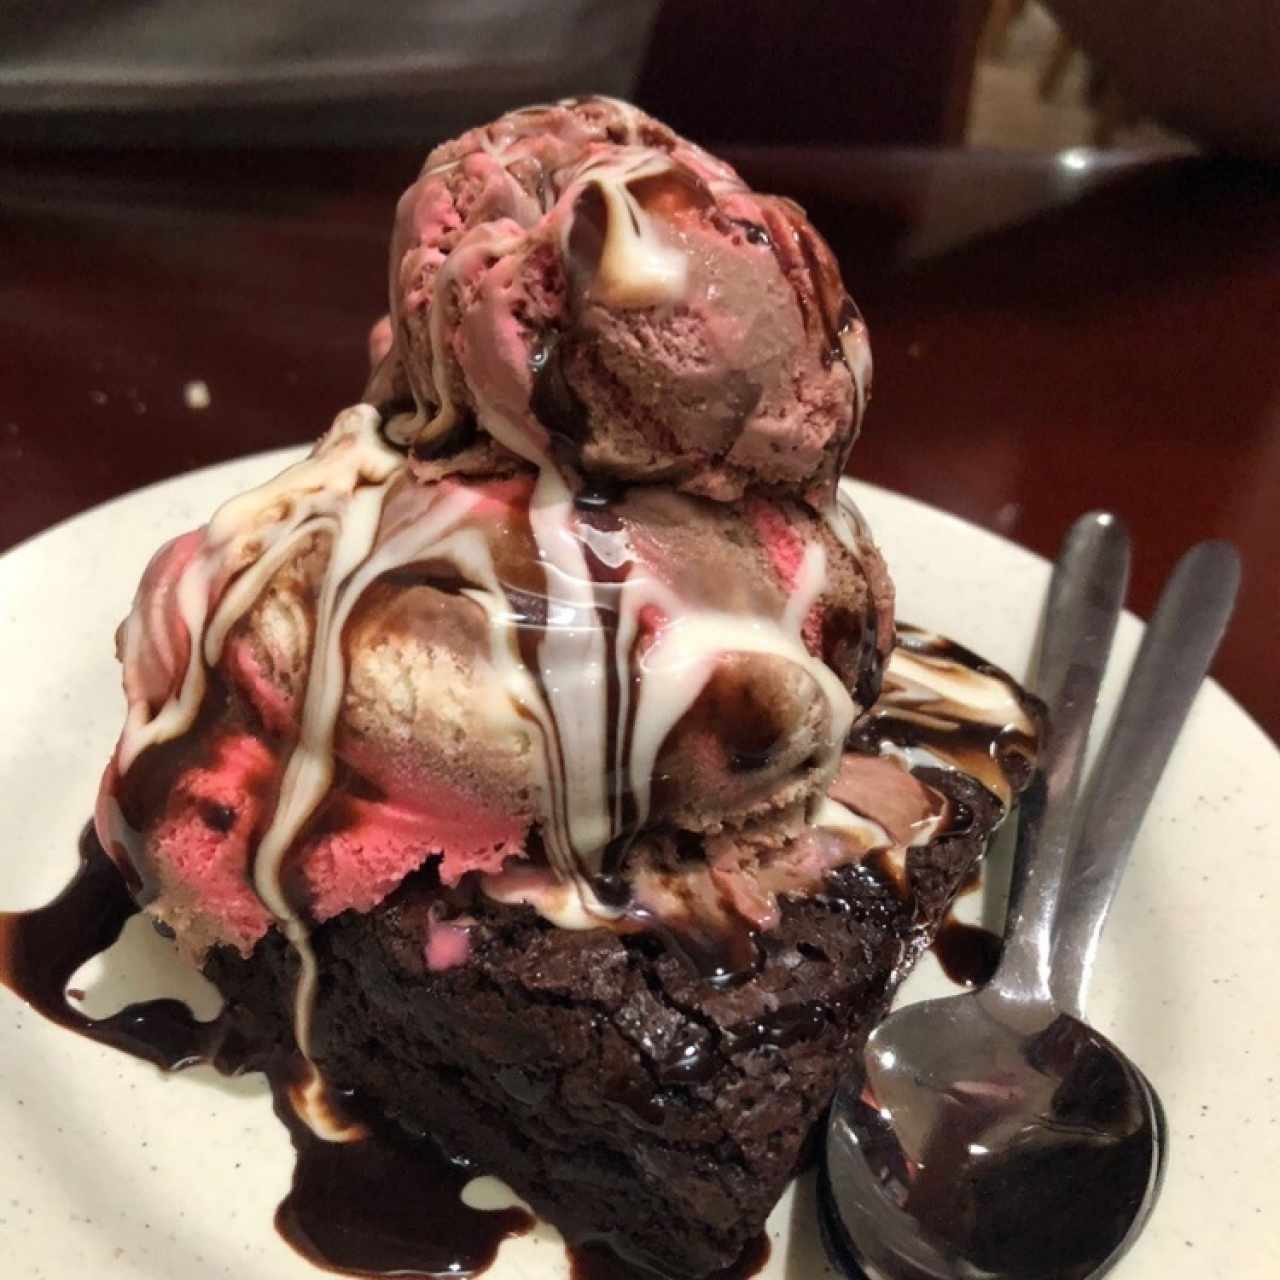 Brownie con helado napolitano